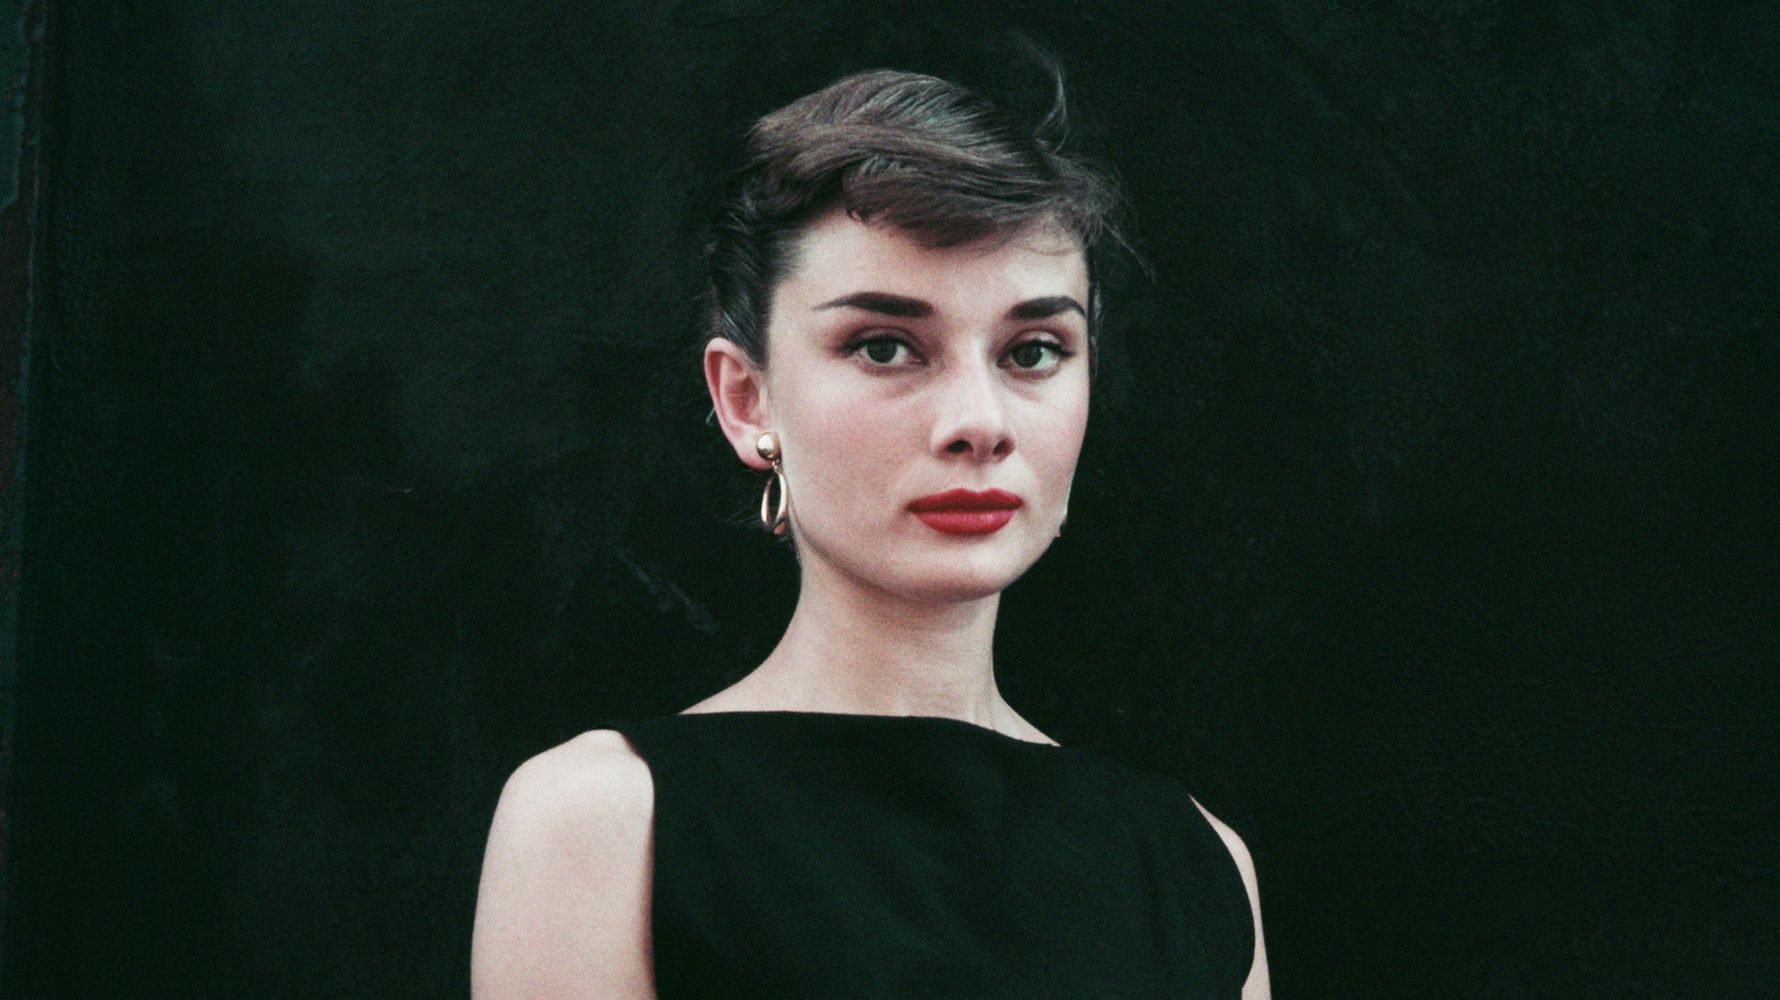 Who is Audrey Hepburn?